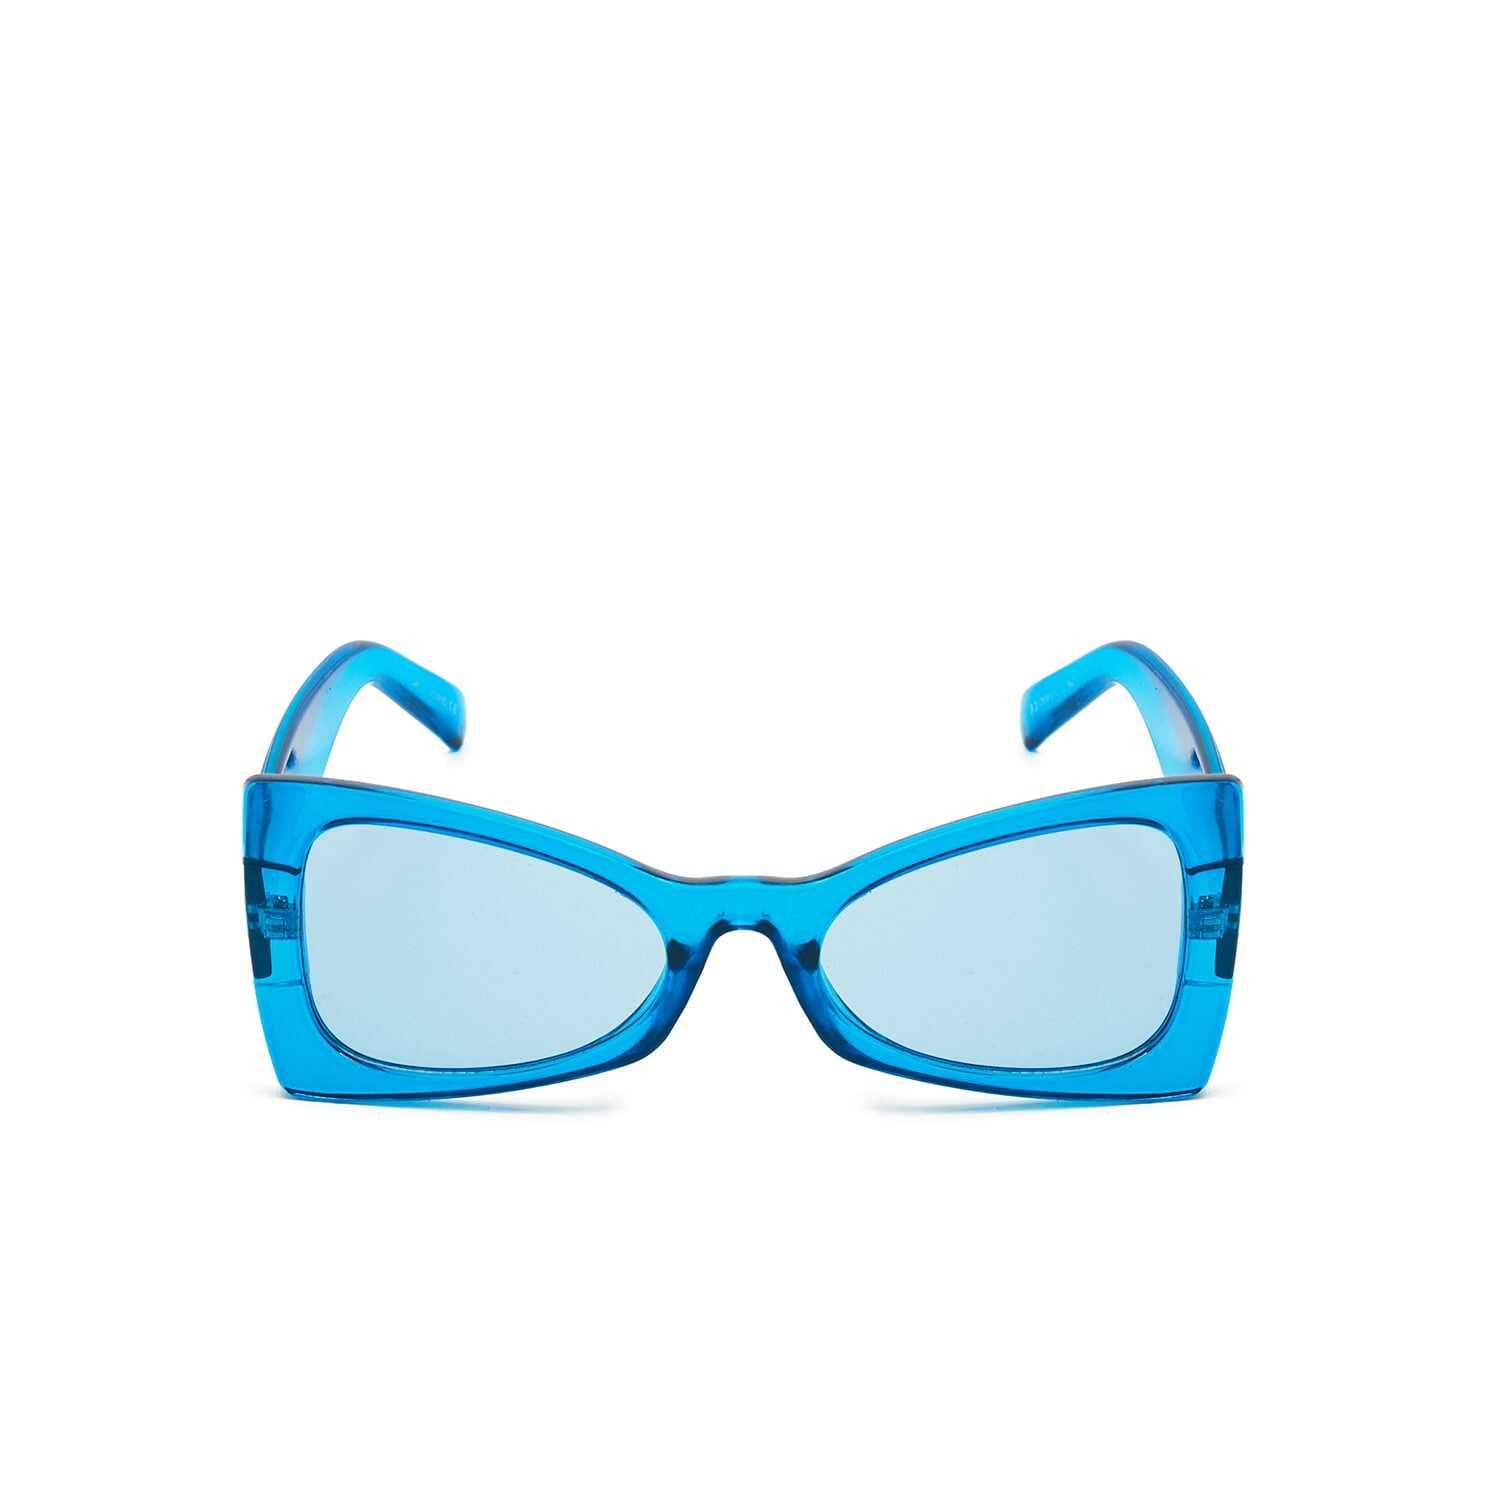 Cropp - Niebieskie okulary przeciwsłoneczne - Turkusowy